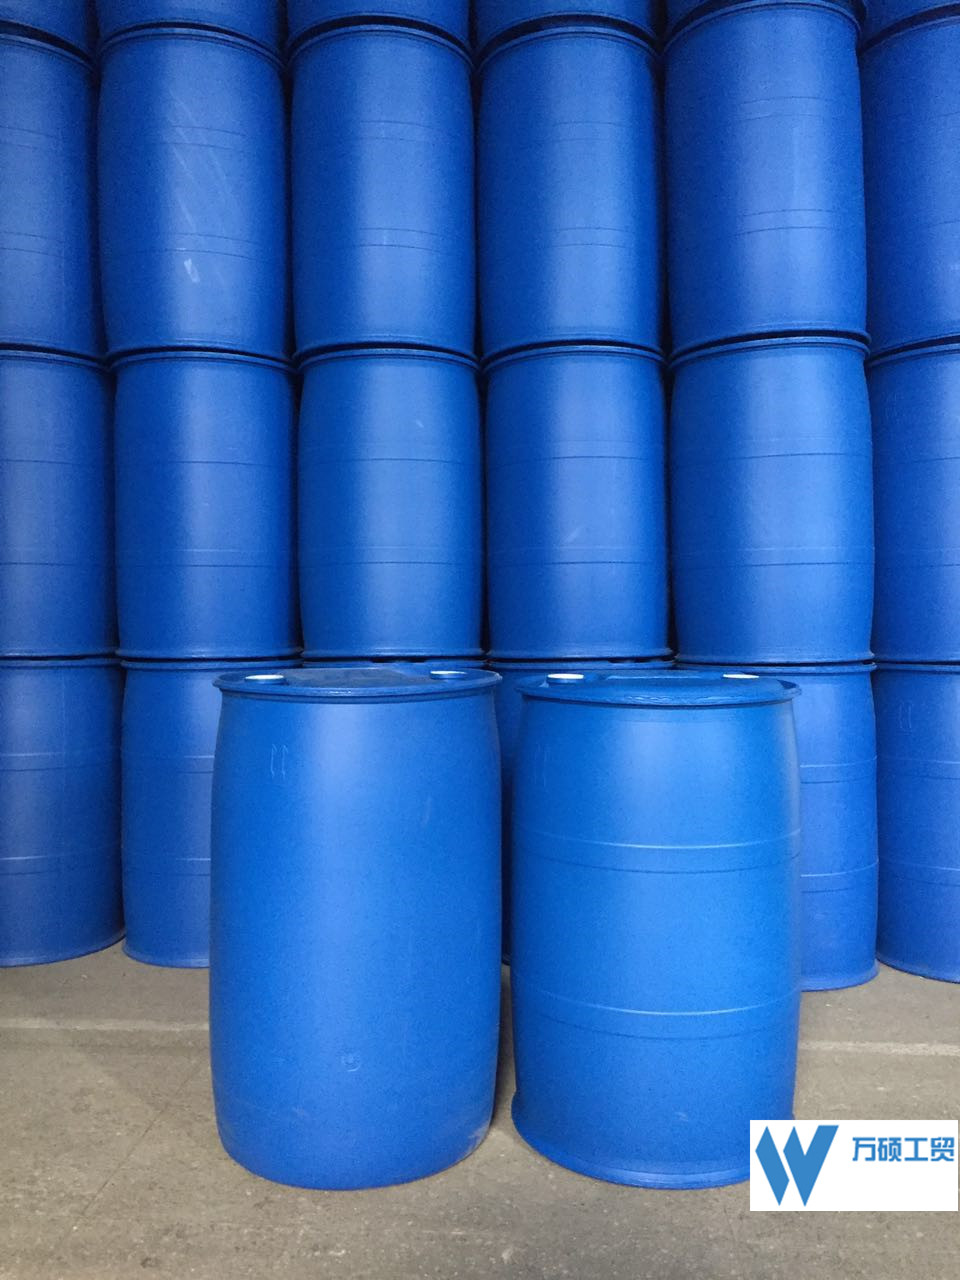 坚固厚实|揭阳化工桶塑料桶厂家